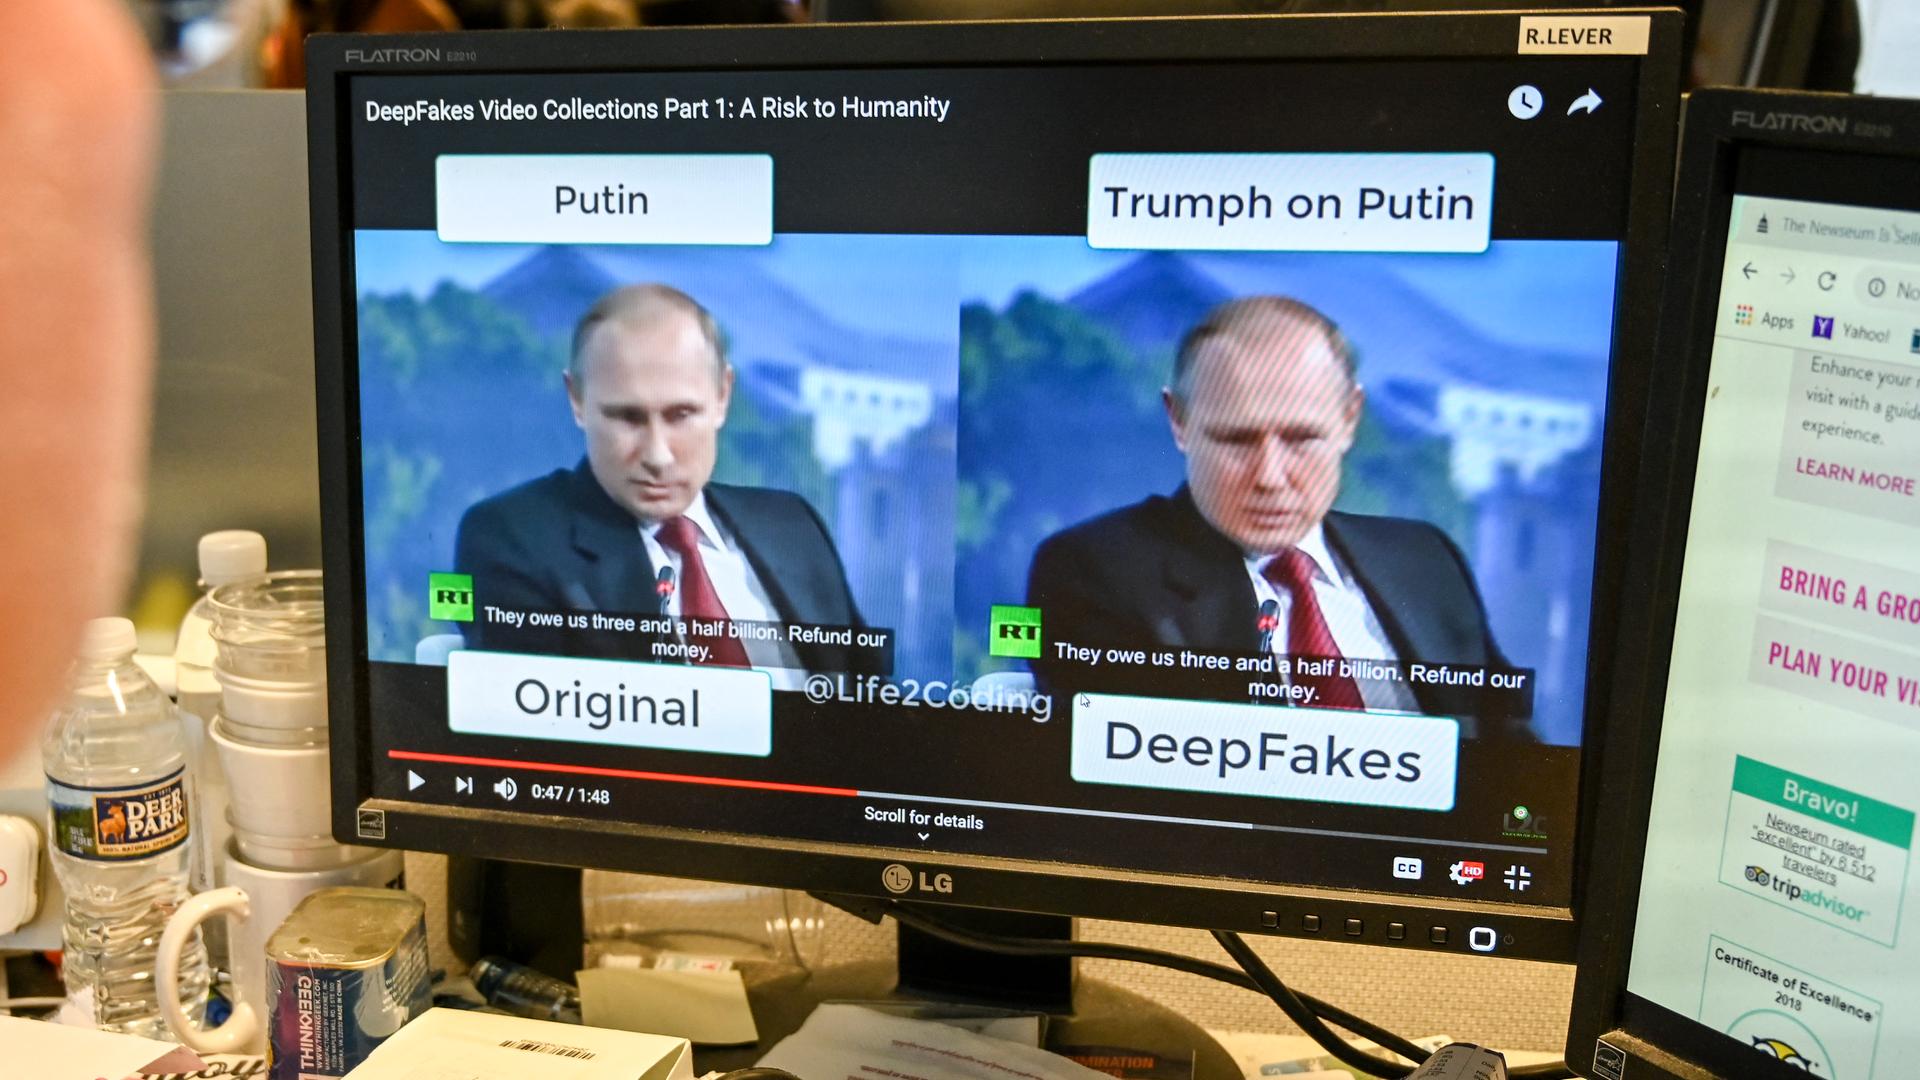 Sogenannte Deep Fake Videos, die mithilfe von künstlicher Intelligenz erzeugt werden, führen verstärkt zu Desinformation